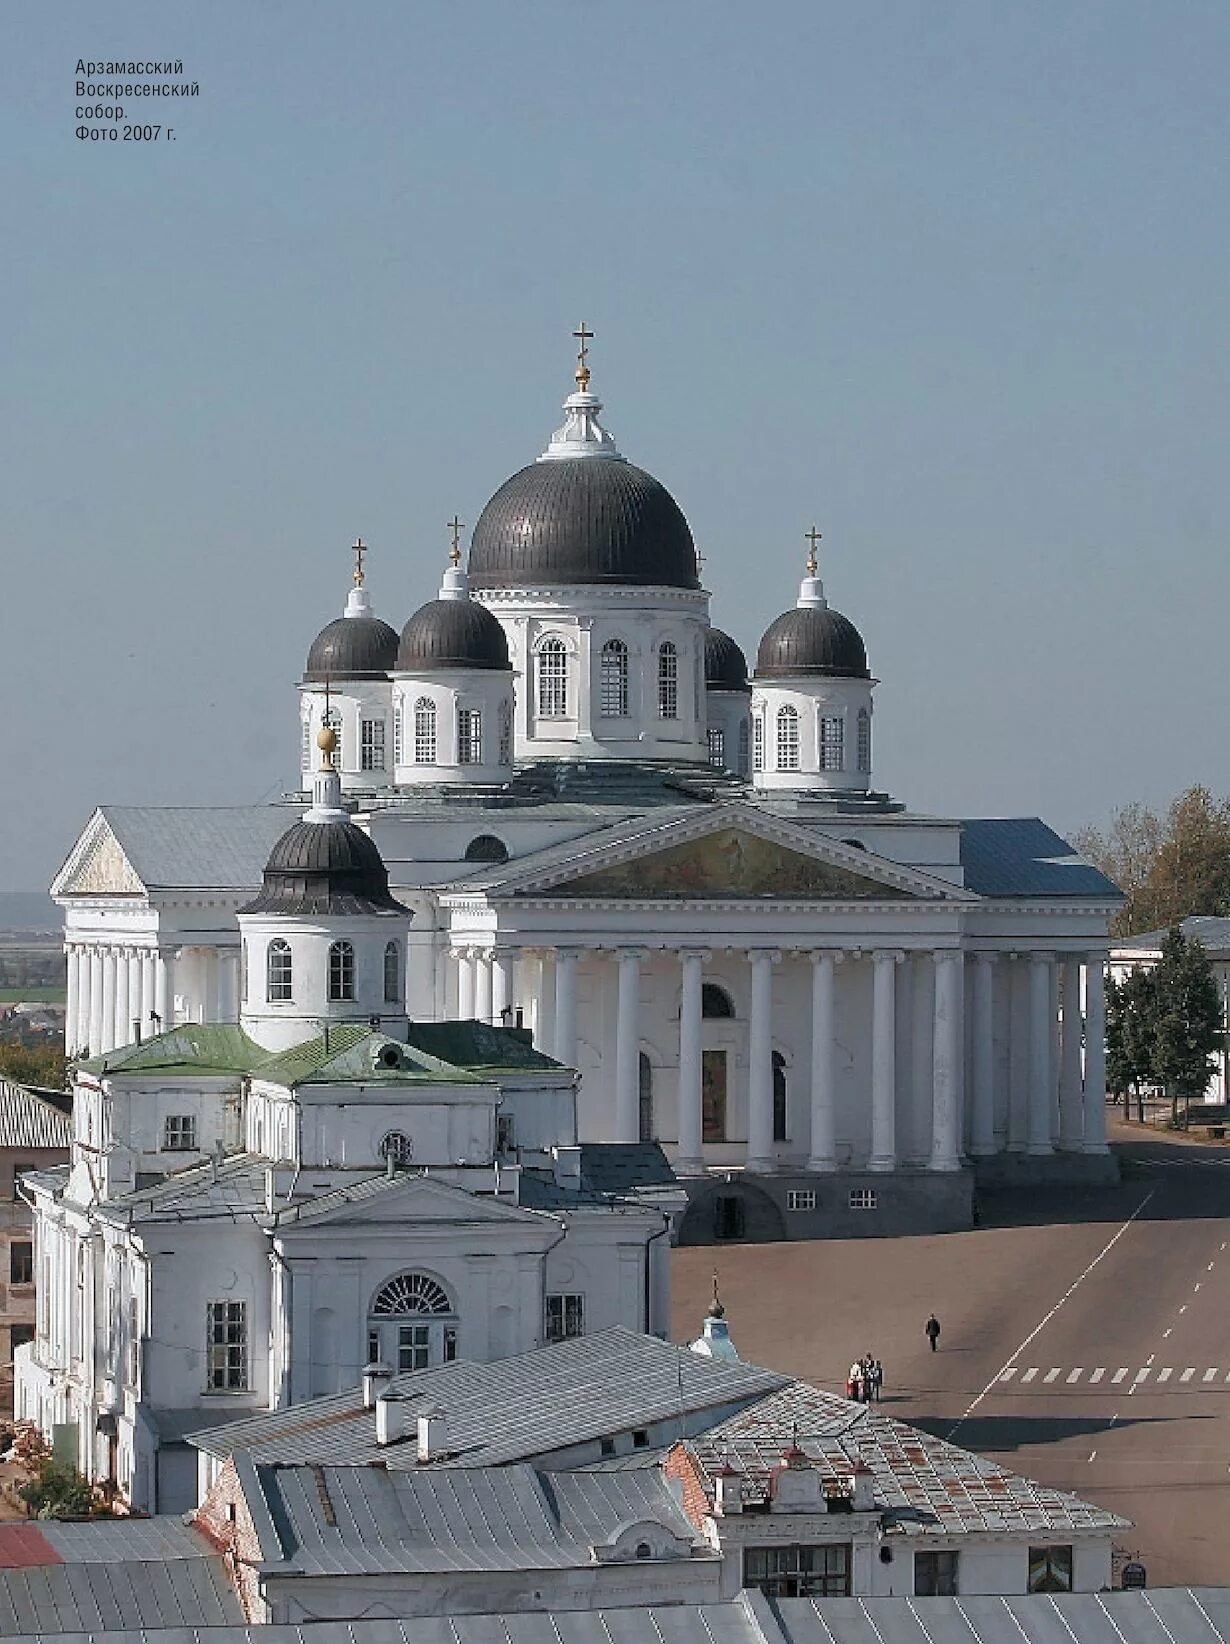 Нижний Новгород город Арзамас. Арзамас 33 церкви.